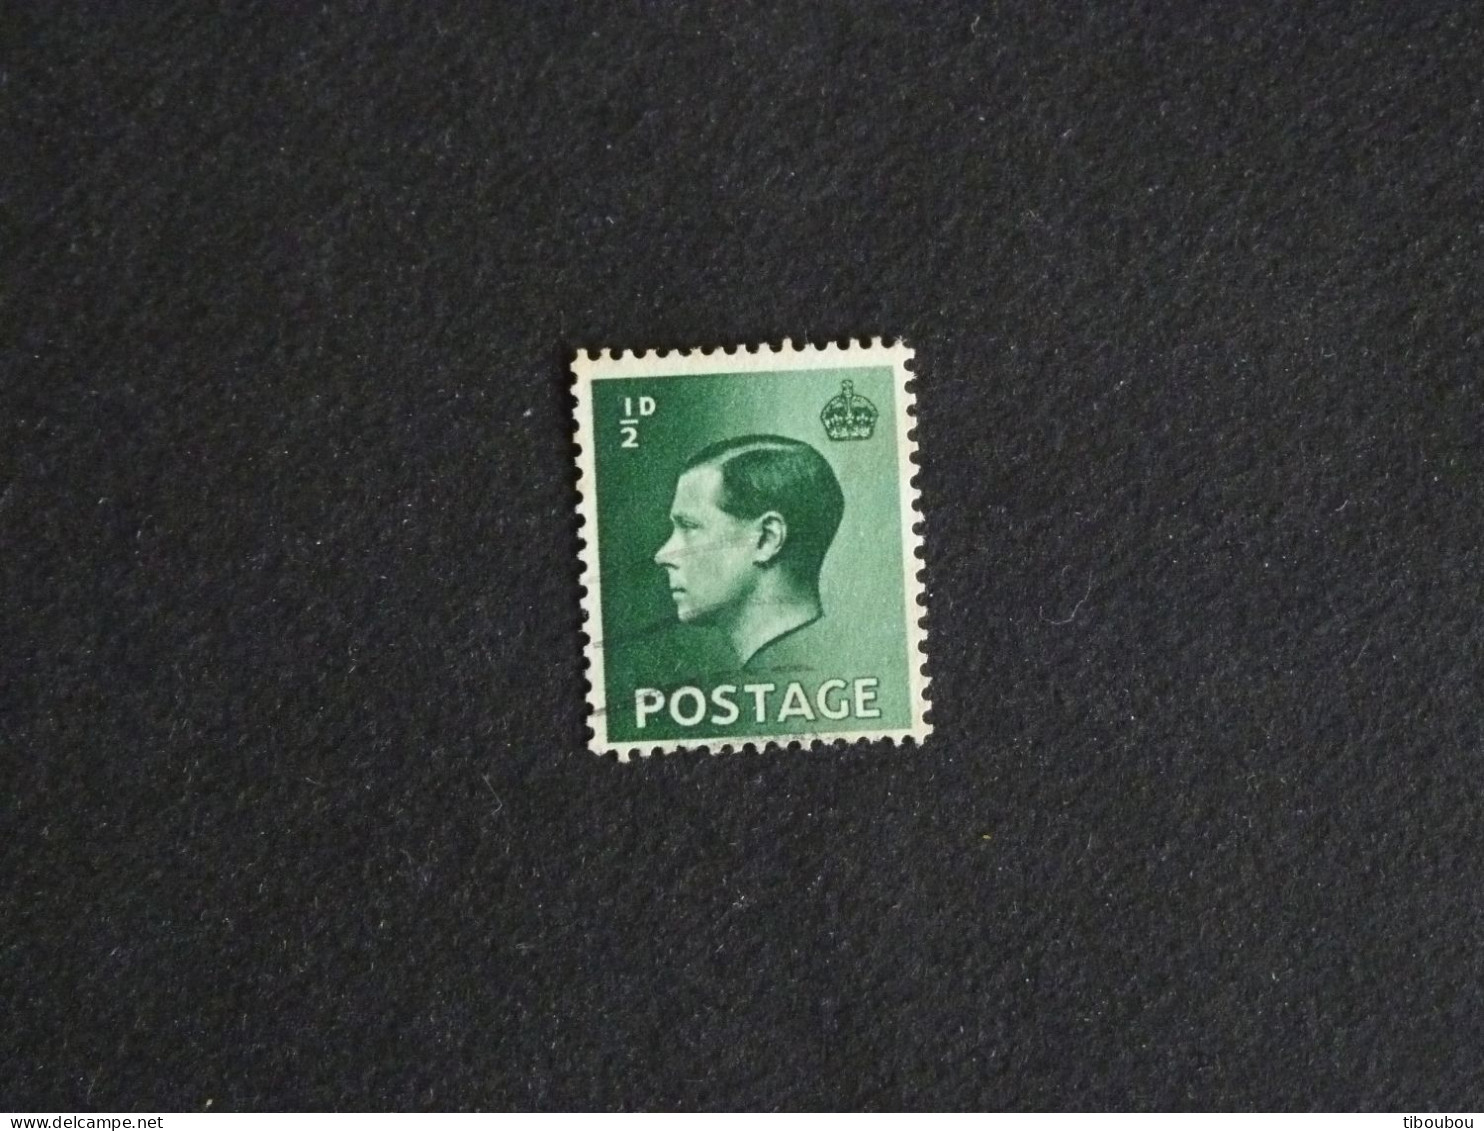 GRANDE BRETAGNE ROYAUME UNI GB UK YT 205 OBLITERE - ROI KING EDOUARD EDWARD VIII - Used Stamps